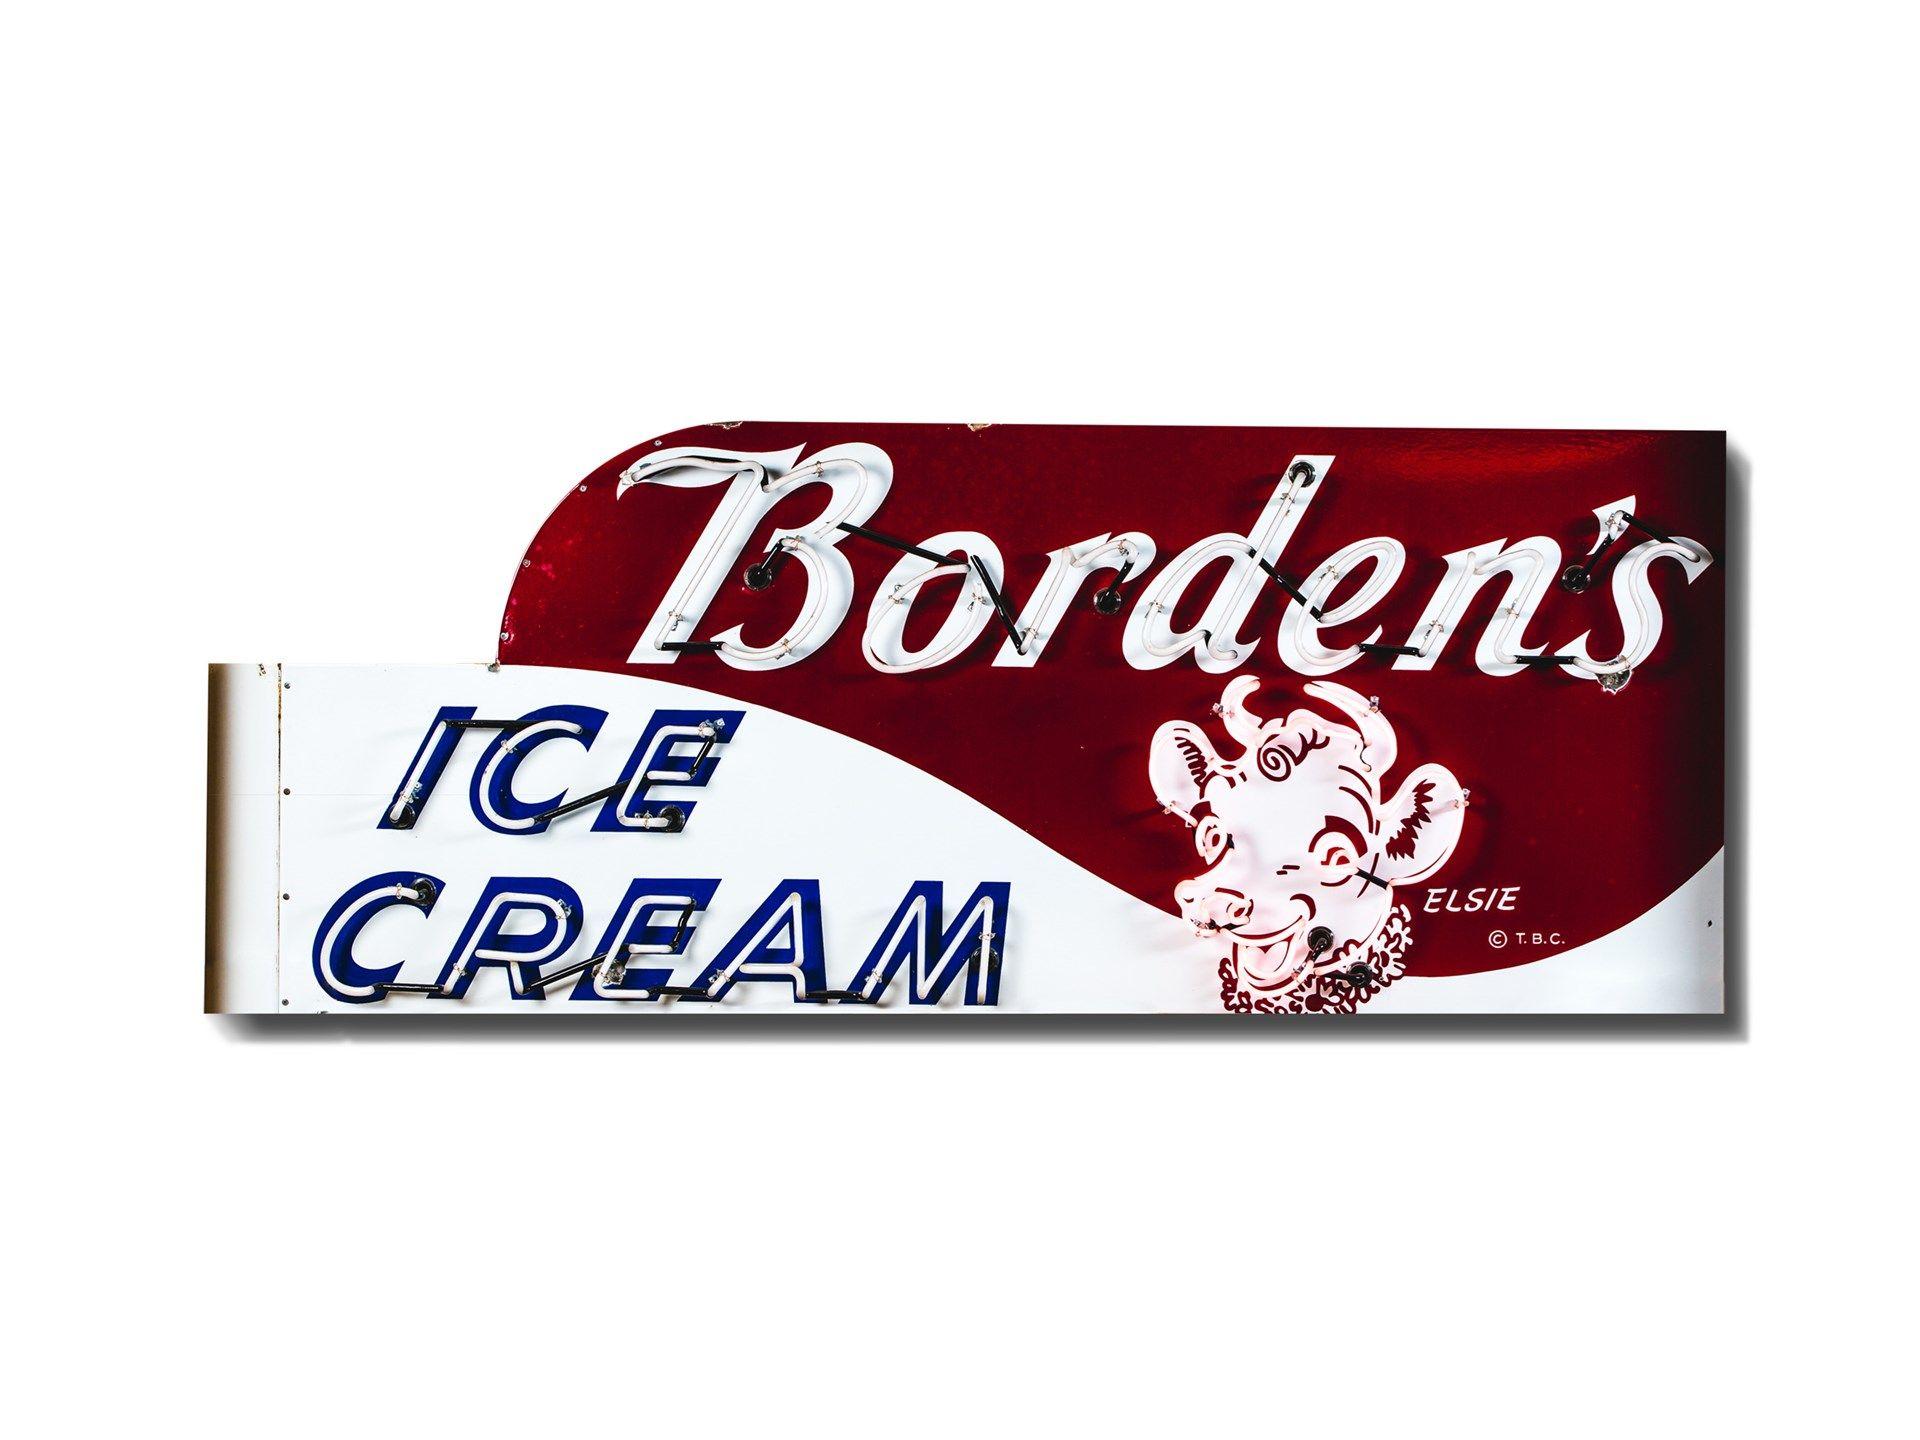 Borden Logo - RM Sotheby's - Borden's Ice Cream with Elsie Logo Neon Signs Mounted ...